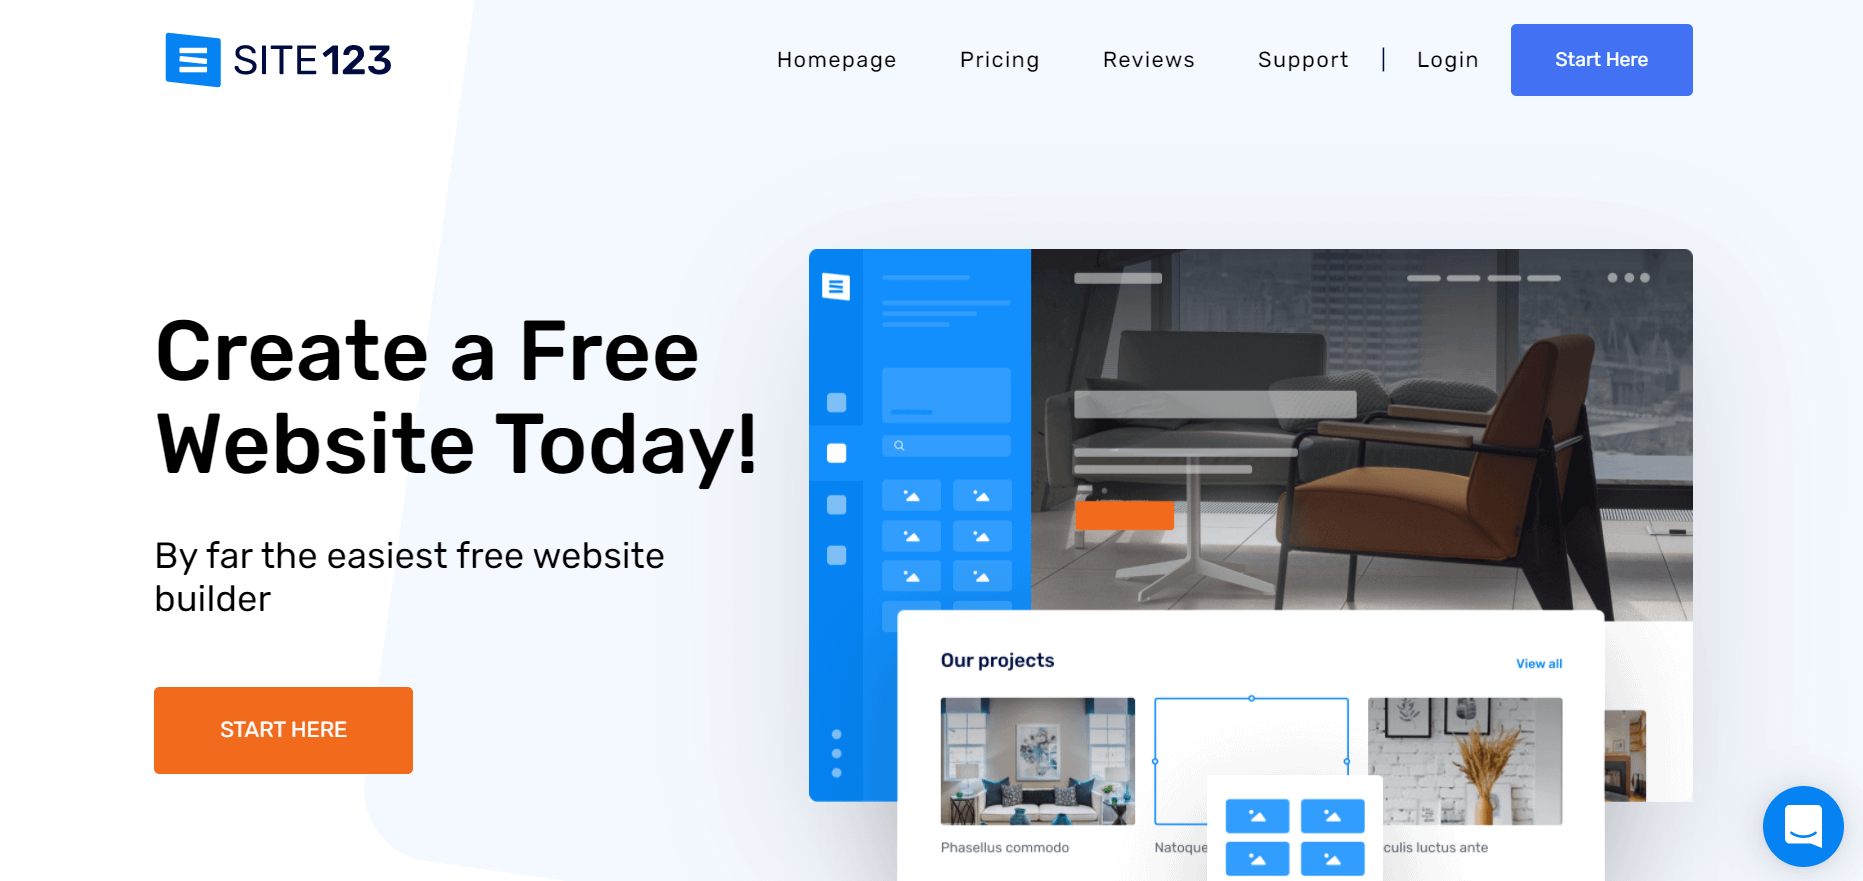 Construtor de sites gratuito Site123 Home Page.